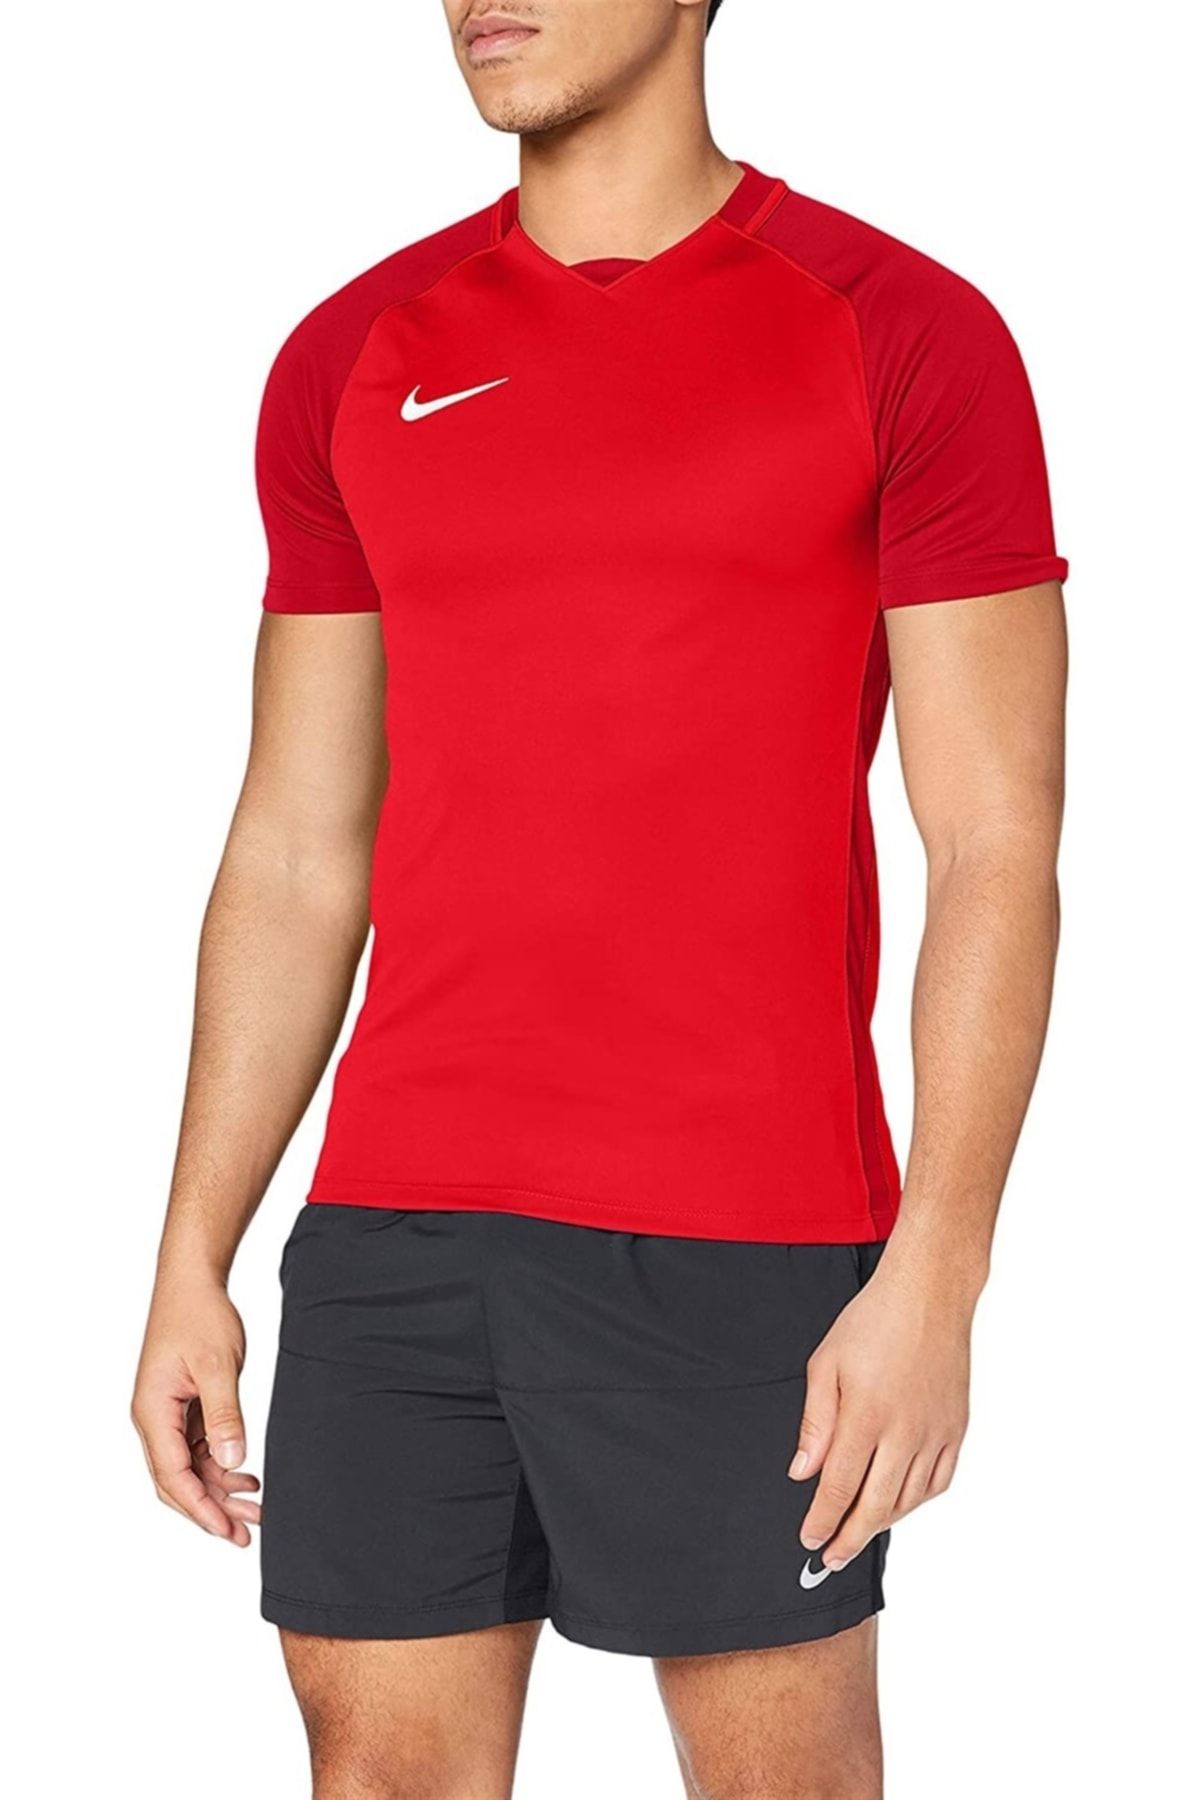 Nike Trophy Iıı - Erkek Kırmızı Spor T-shirt - 881483-657